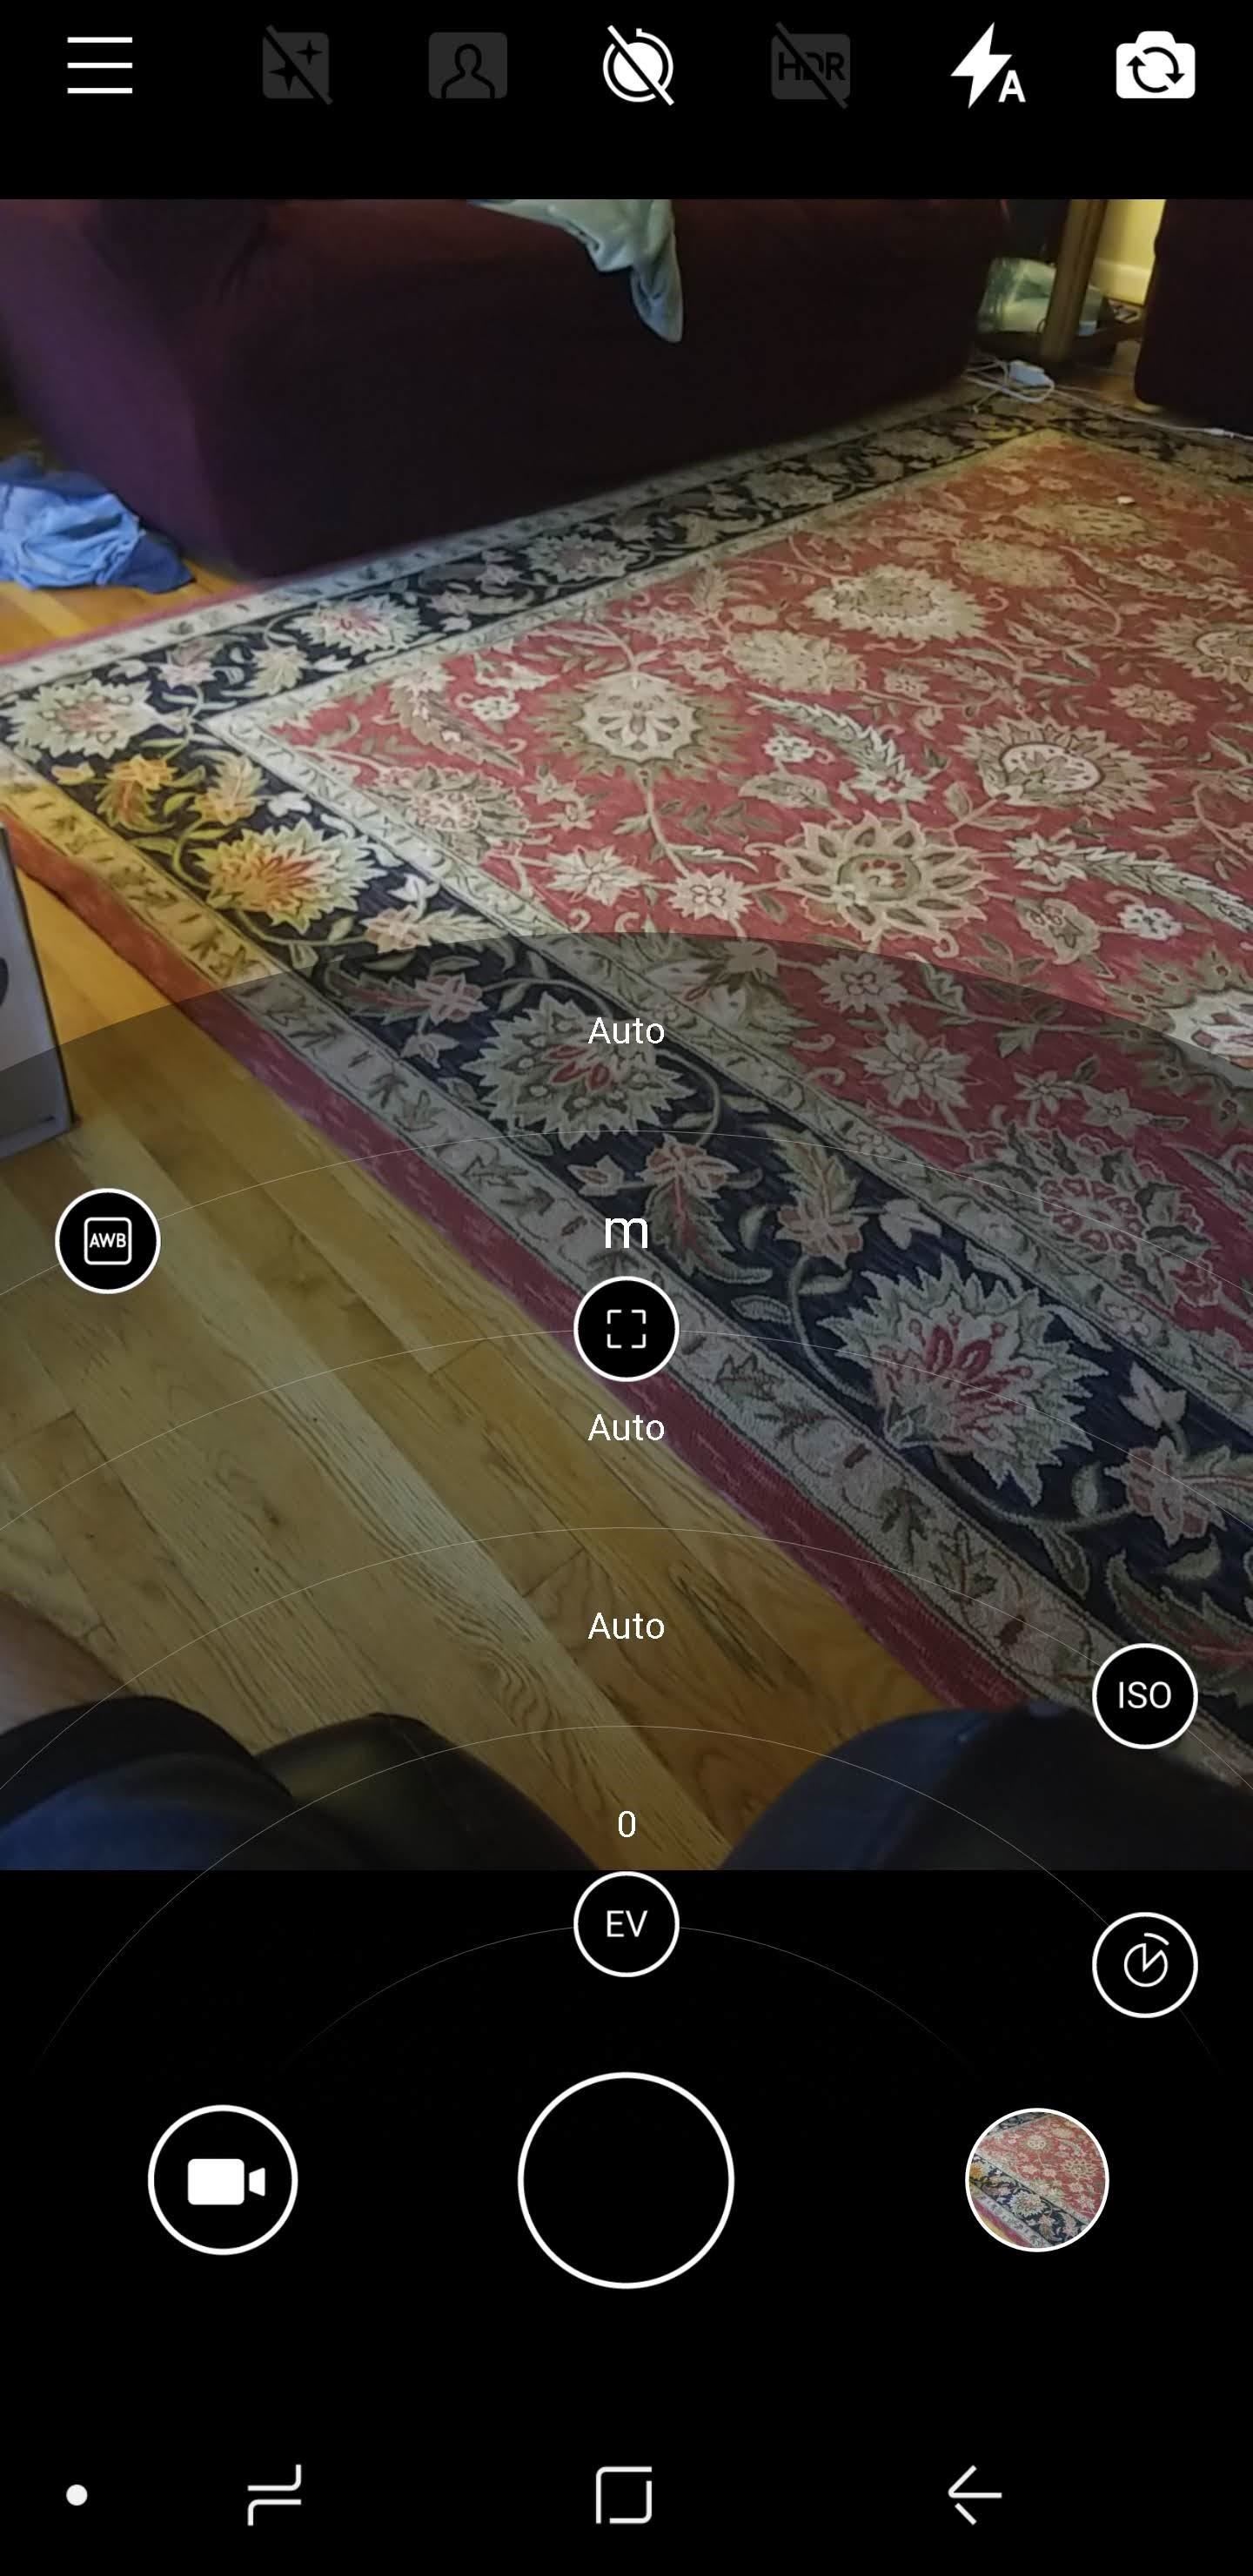 Dapatkan Aplikasi Kamera Eksklusif Nokia dengan Mode Pro di Android Apa Pun